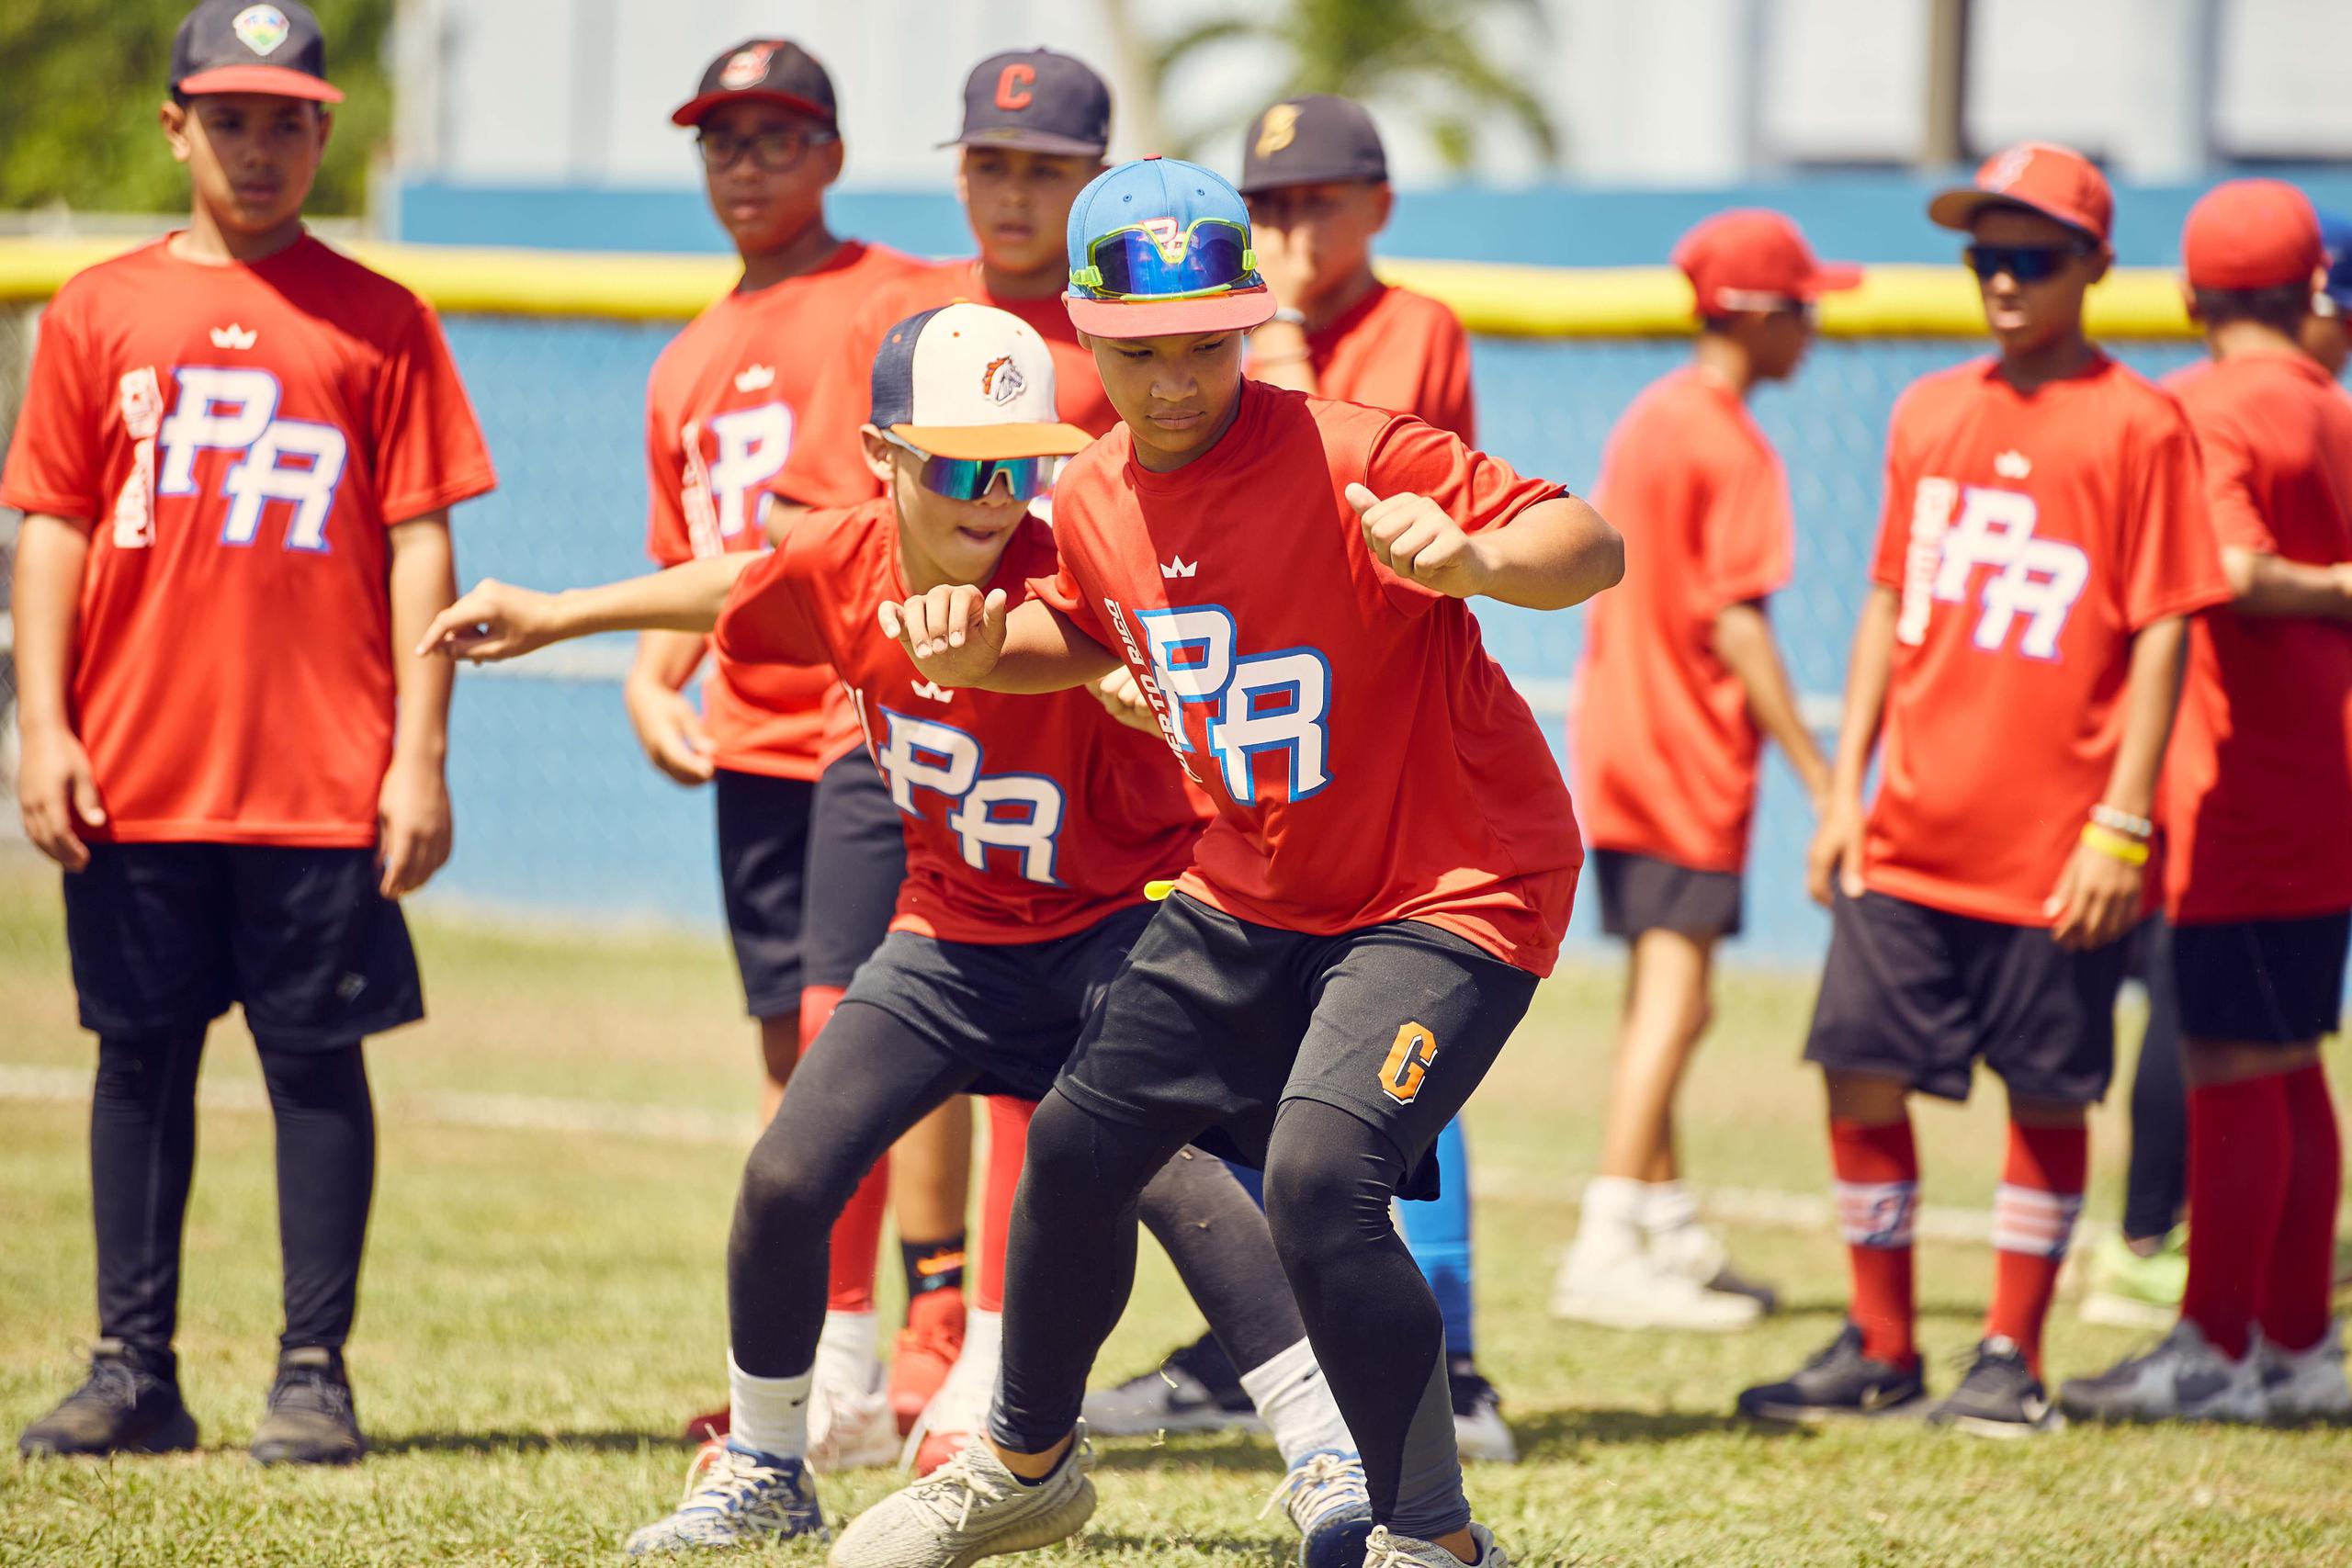 El seleccionado boricua Sub 12 de béisbol que participará en el Premundial de México realizó sesiones de práctica en la Isla antes de salir hacia su compromiso.